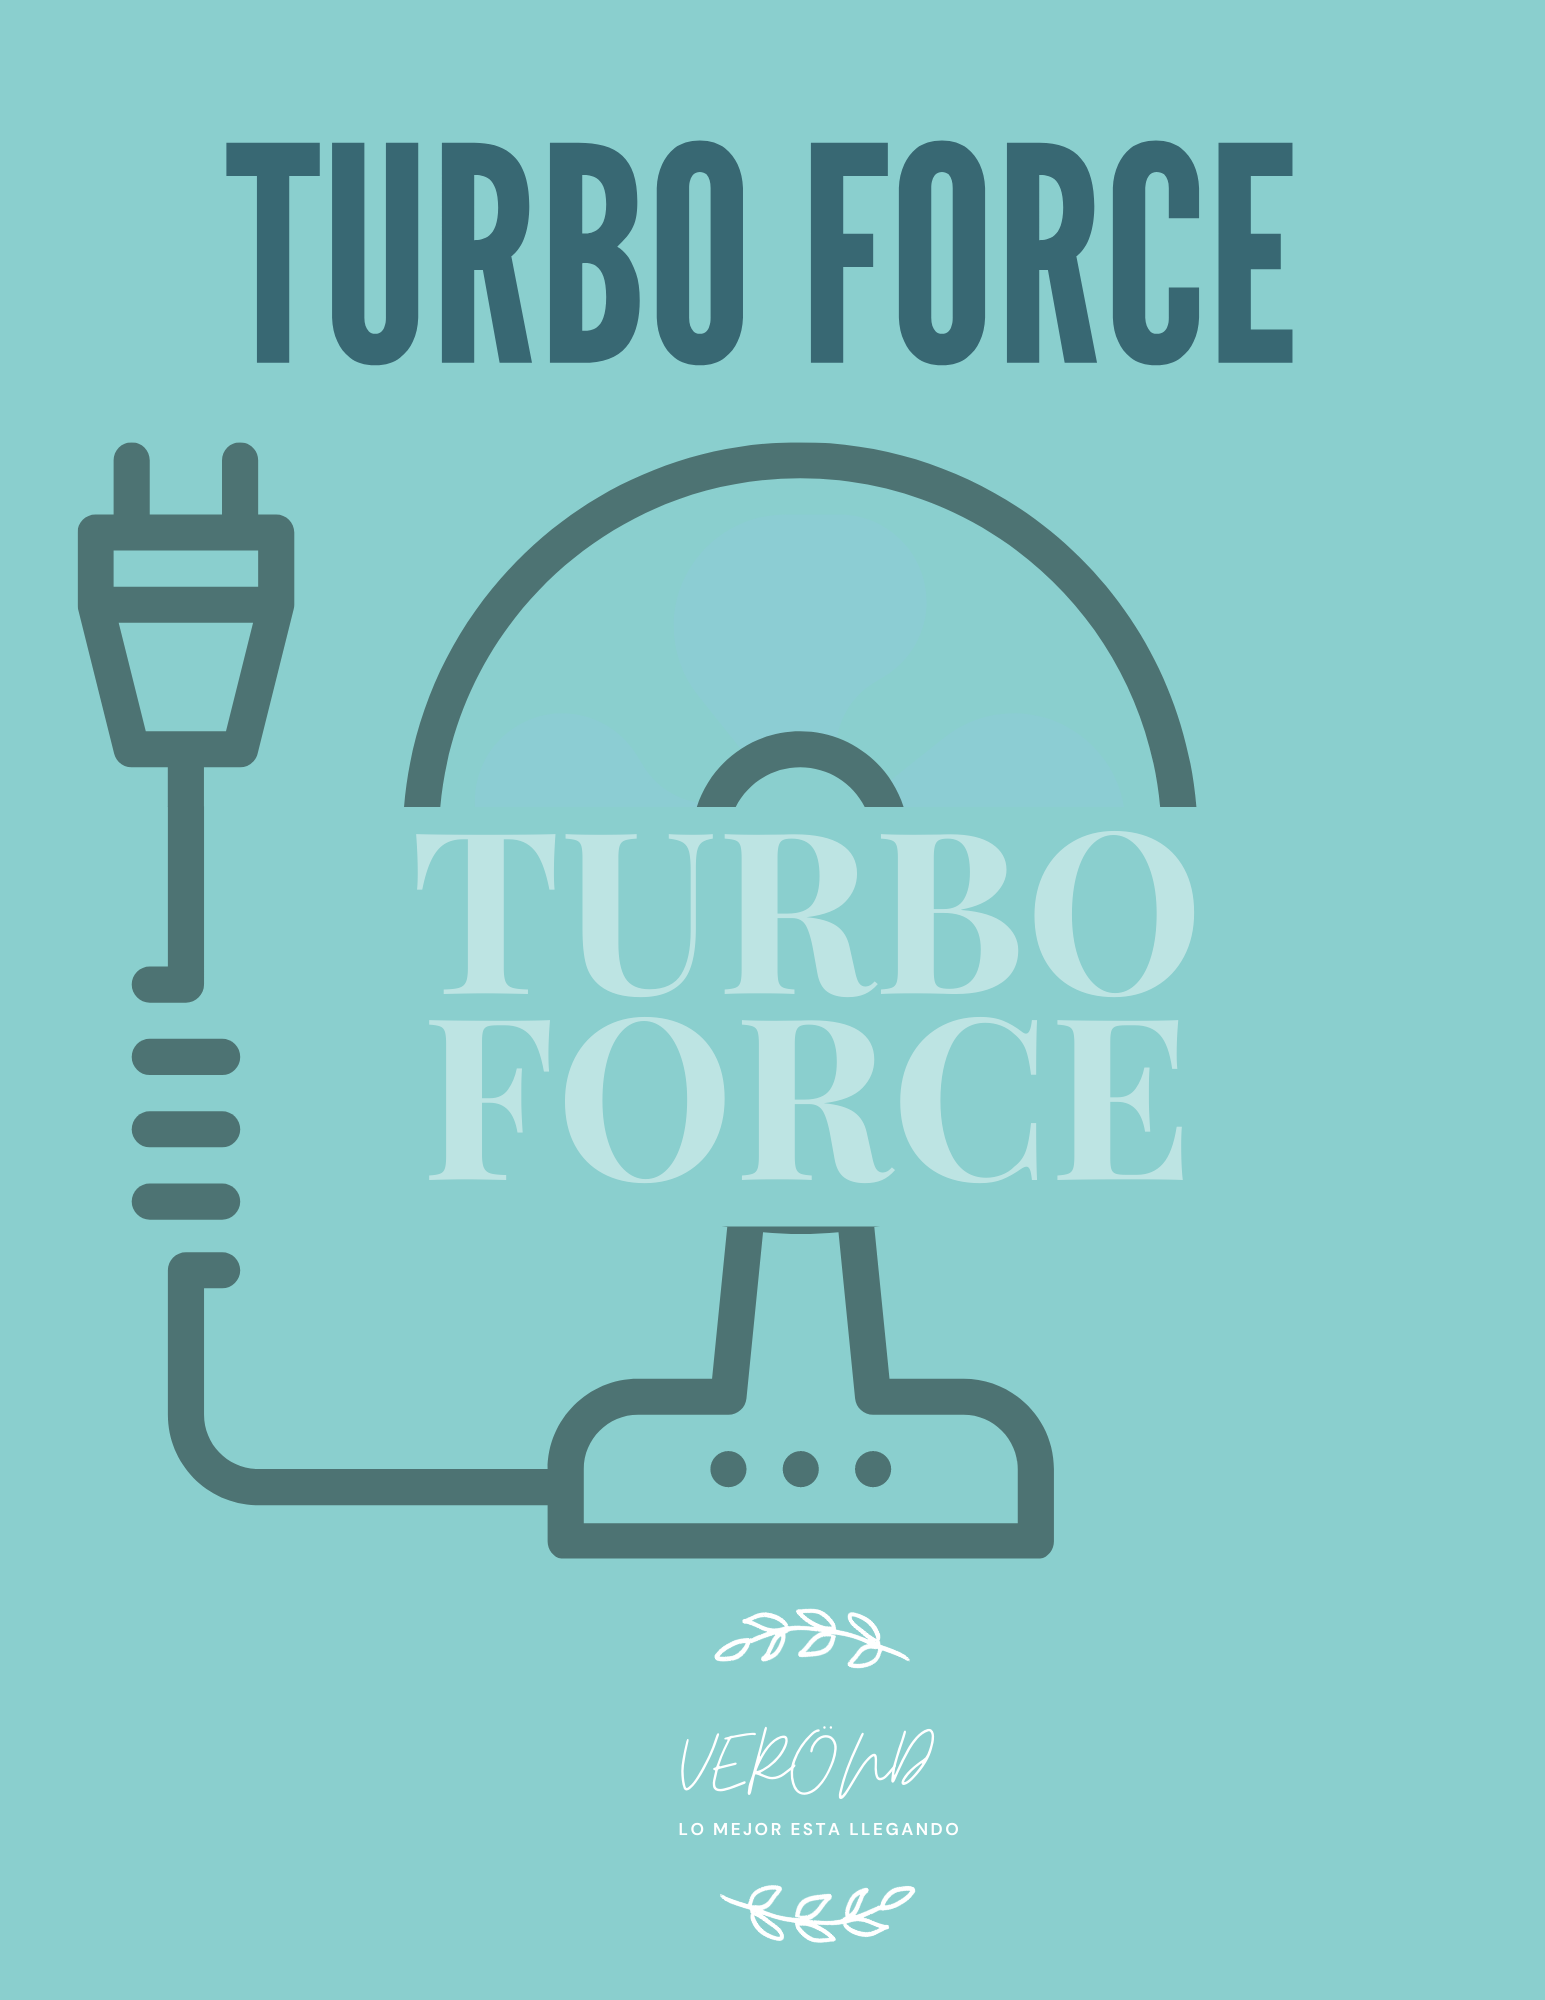 Turbo Force y estadística